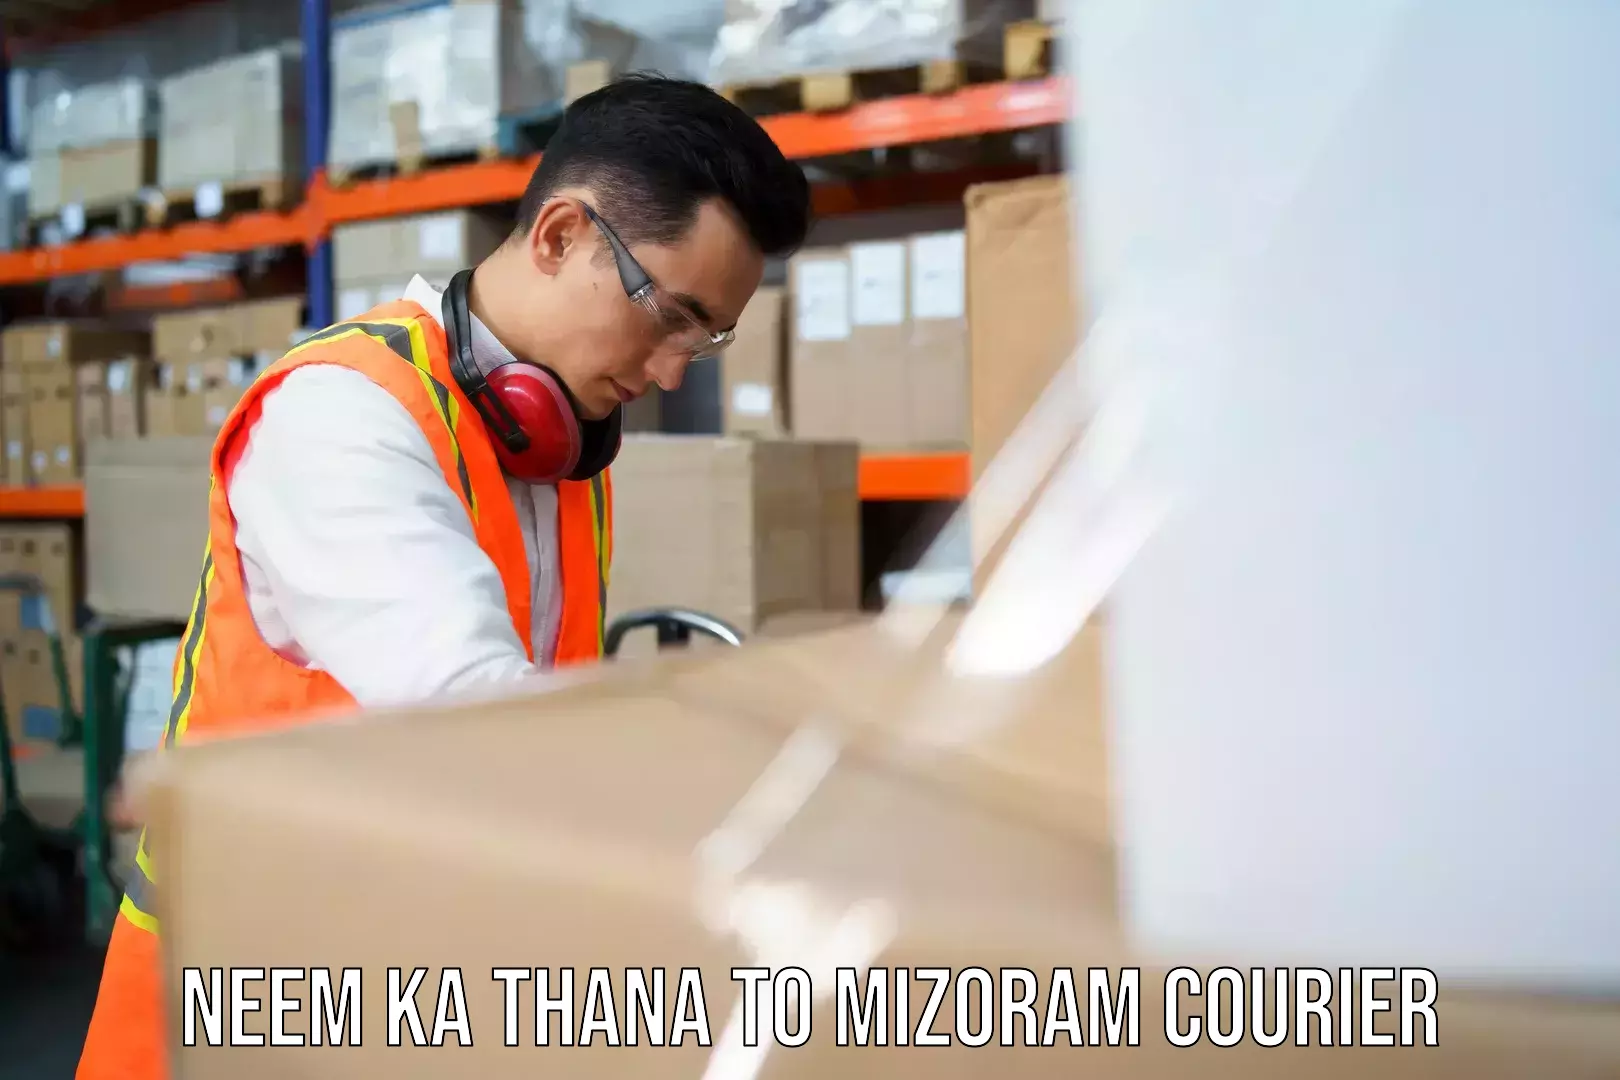 Nationwide courier service Neem ka Thana to Mizoram